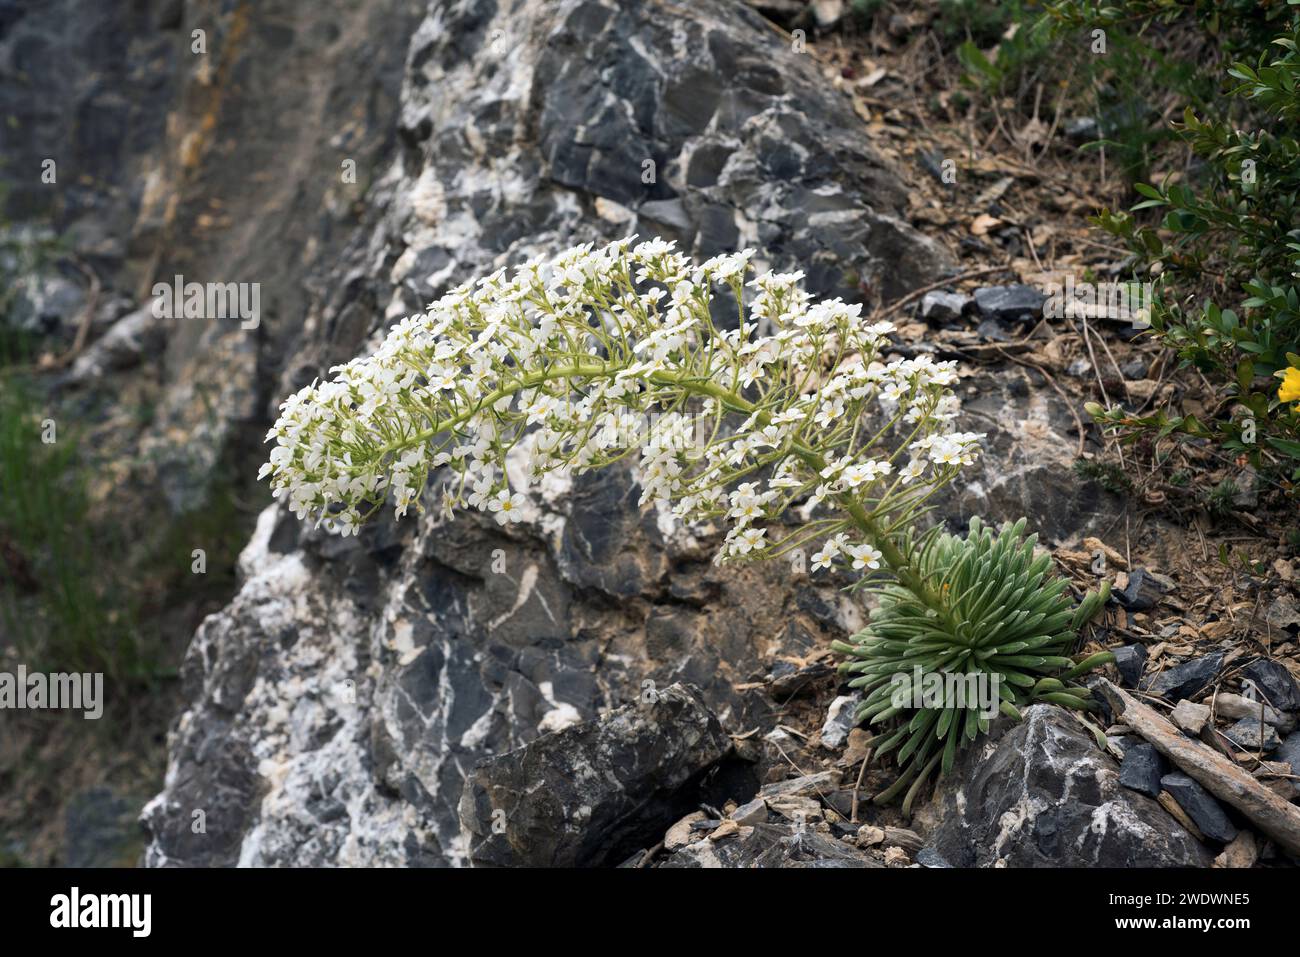 Corona de rey (Saxifraga longifolia) est une plante herbacée vivace endémique des montagnes calcaires de l'est de l'Espagne et de l'Afrique du Nord. Cette photo a été prise à Hu Banque D'Images